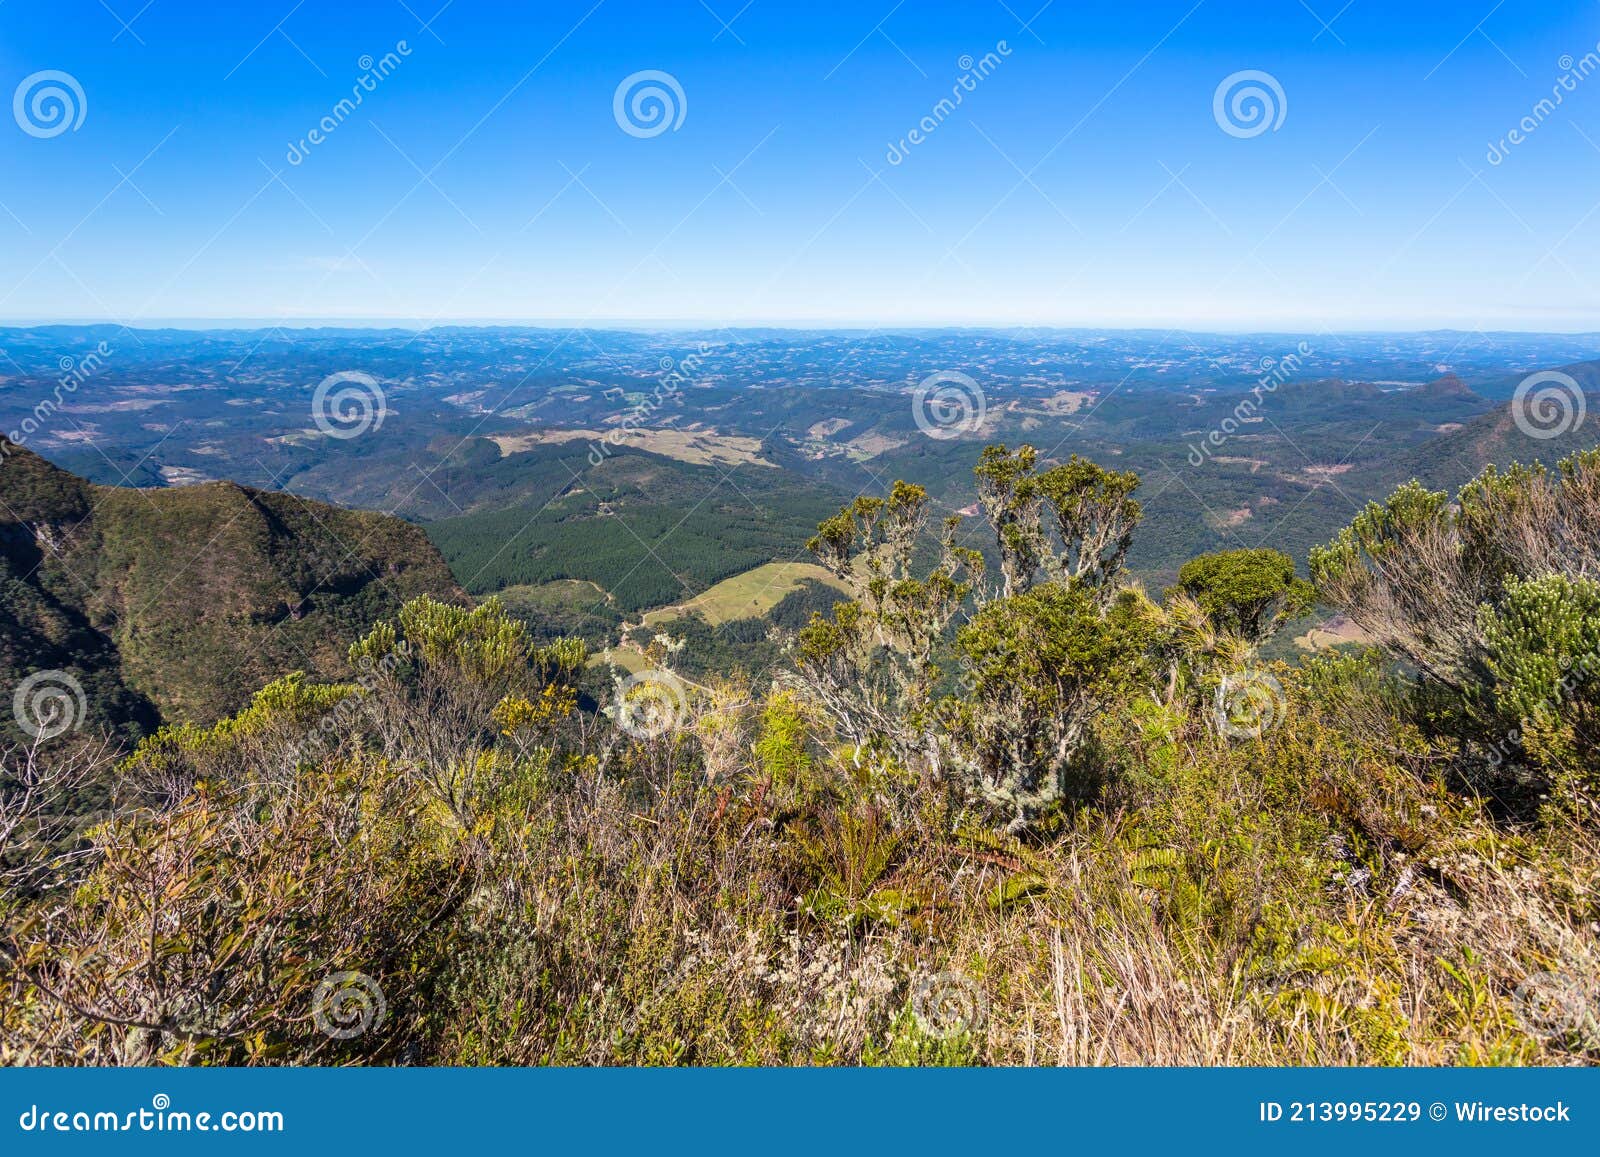 scenic serra geral mountain range in santa catarina, brazil